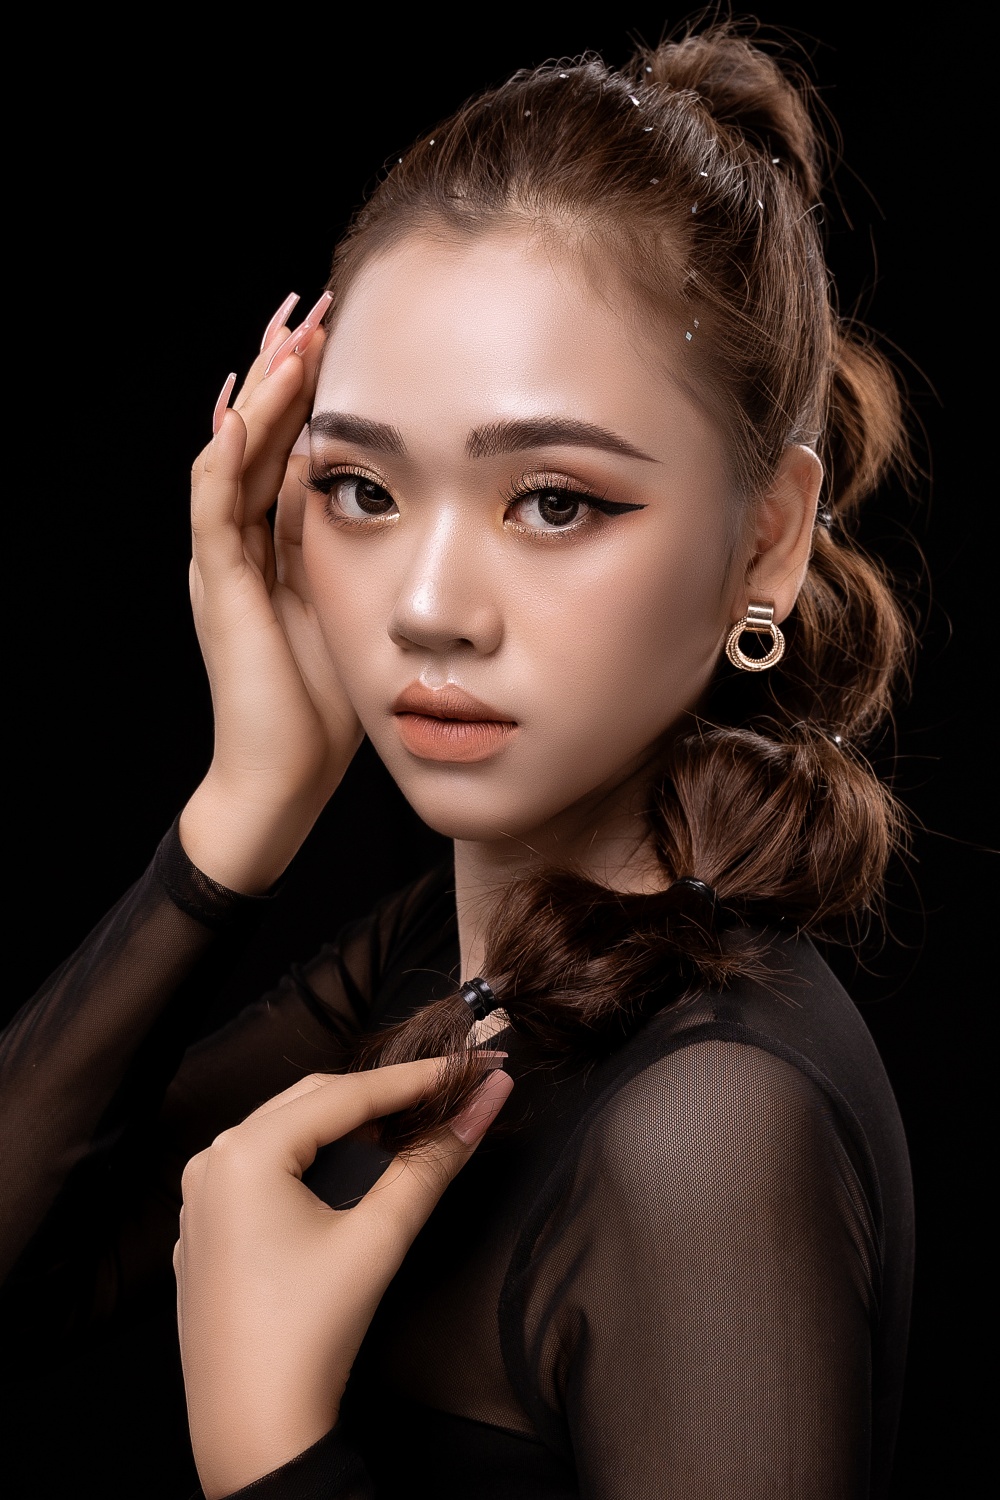 Nữ sinh 19 tuổi nói gì về việc đứng đầu bình chọn ở Hoa hậu Hoàn vũ Việt Nam - ảnh 1